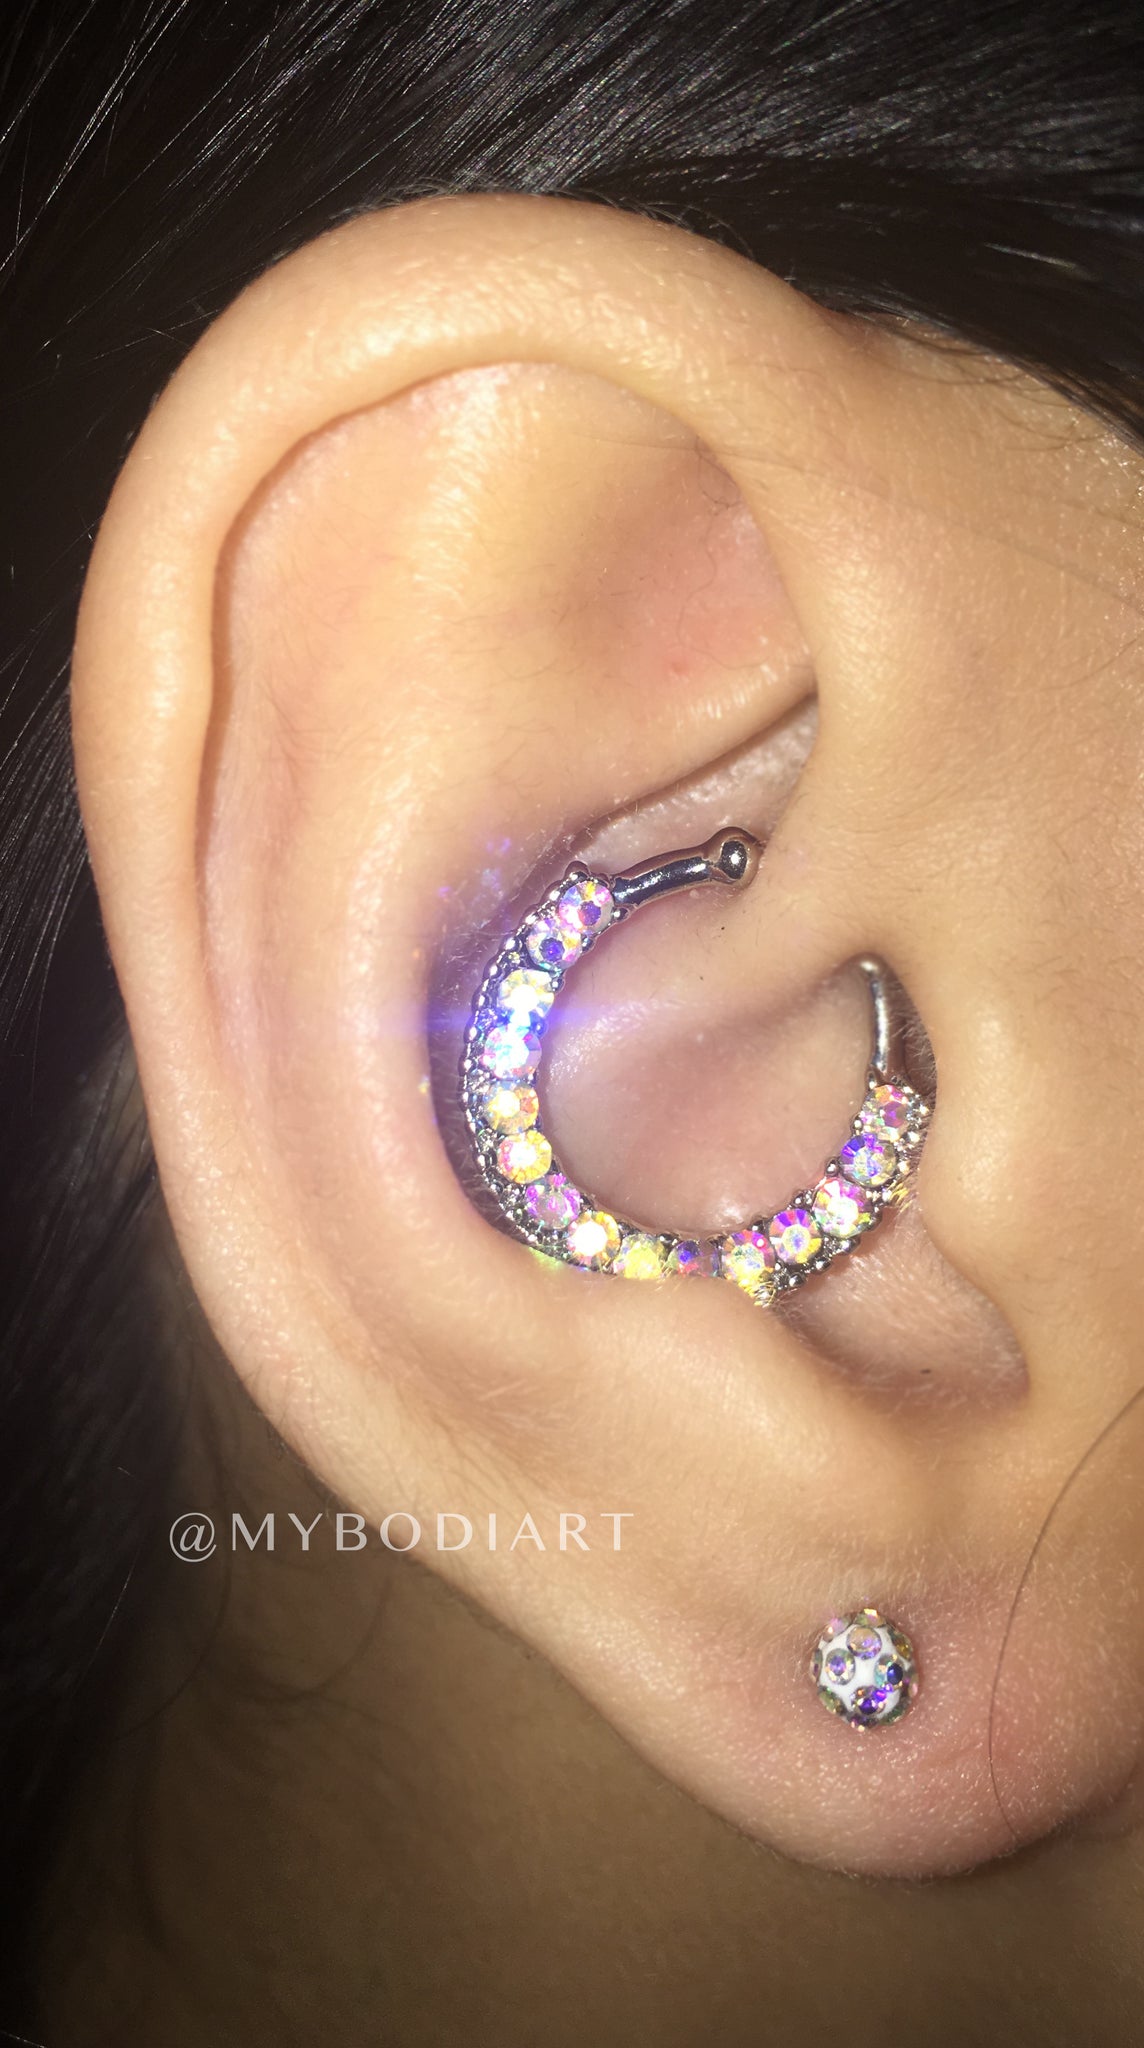 Pretty Feminine Ear Piercing Ideas for Teenagers - Rainbow Crystal Ball Earring Stud Cartilage, Helix, Tragus, Conch - www.MyBodiArt.com